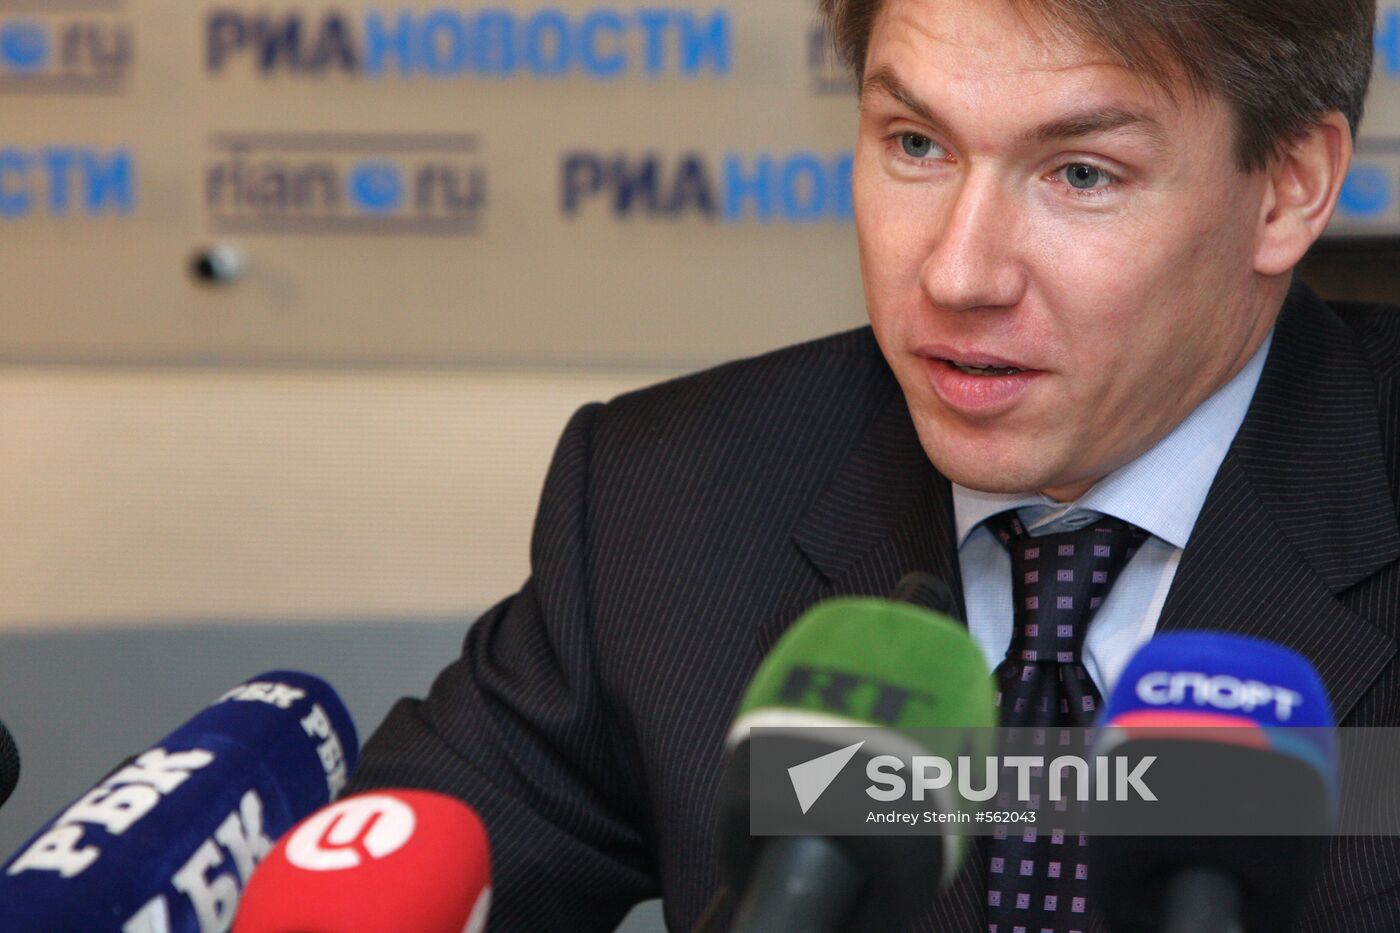 Alexei Sorokin's news conference